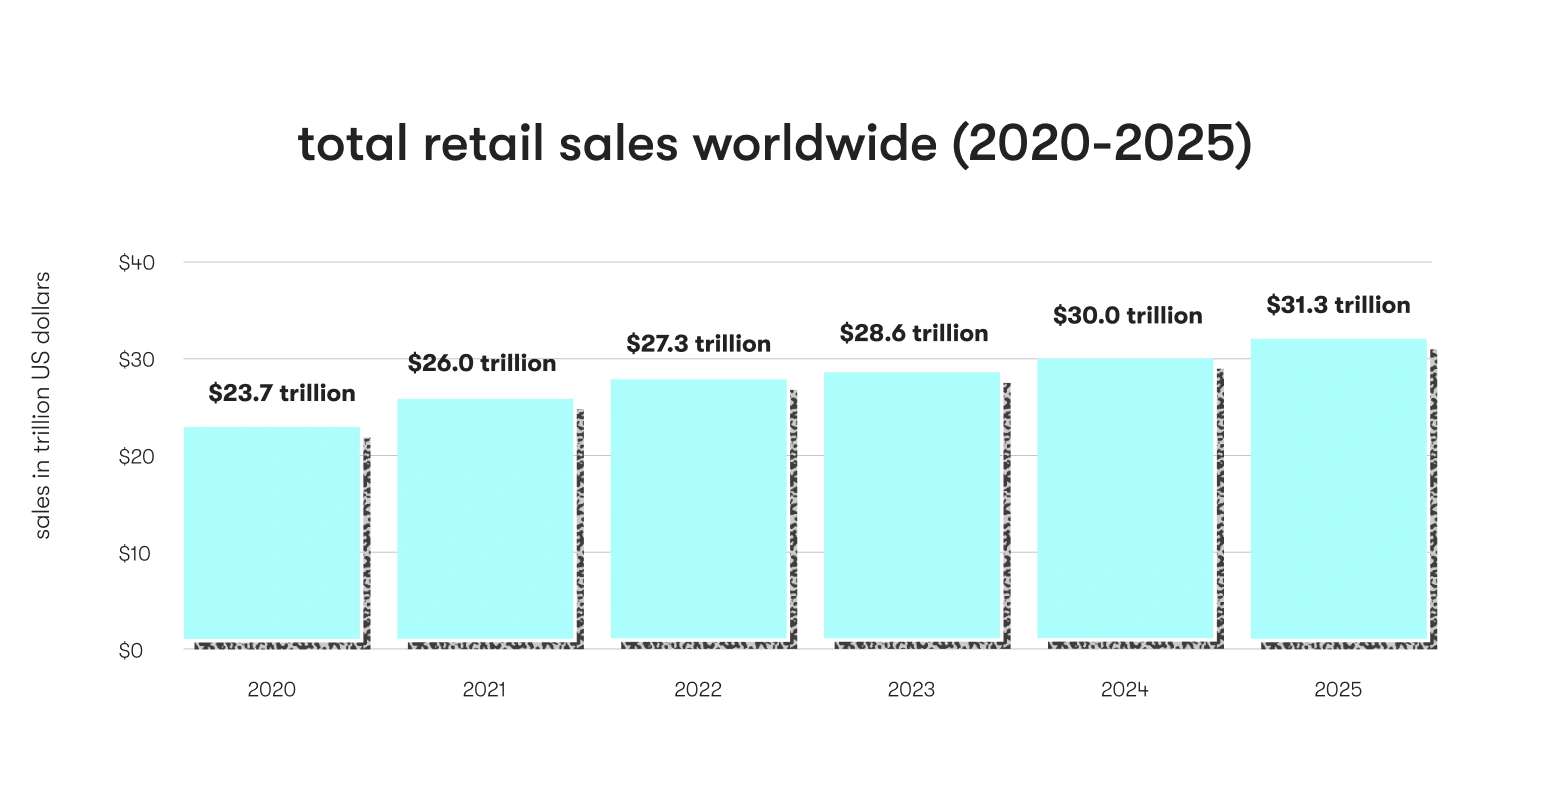 Worldwide retail sales